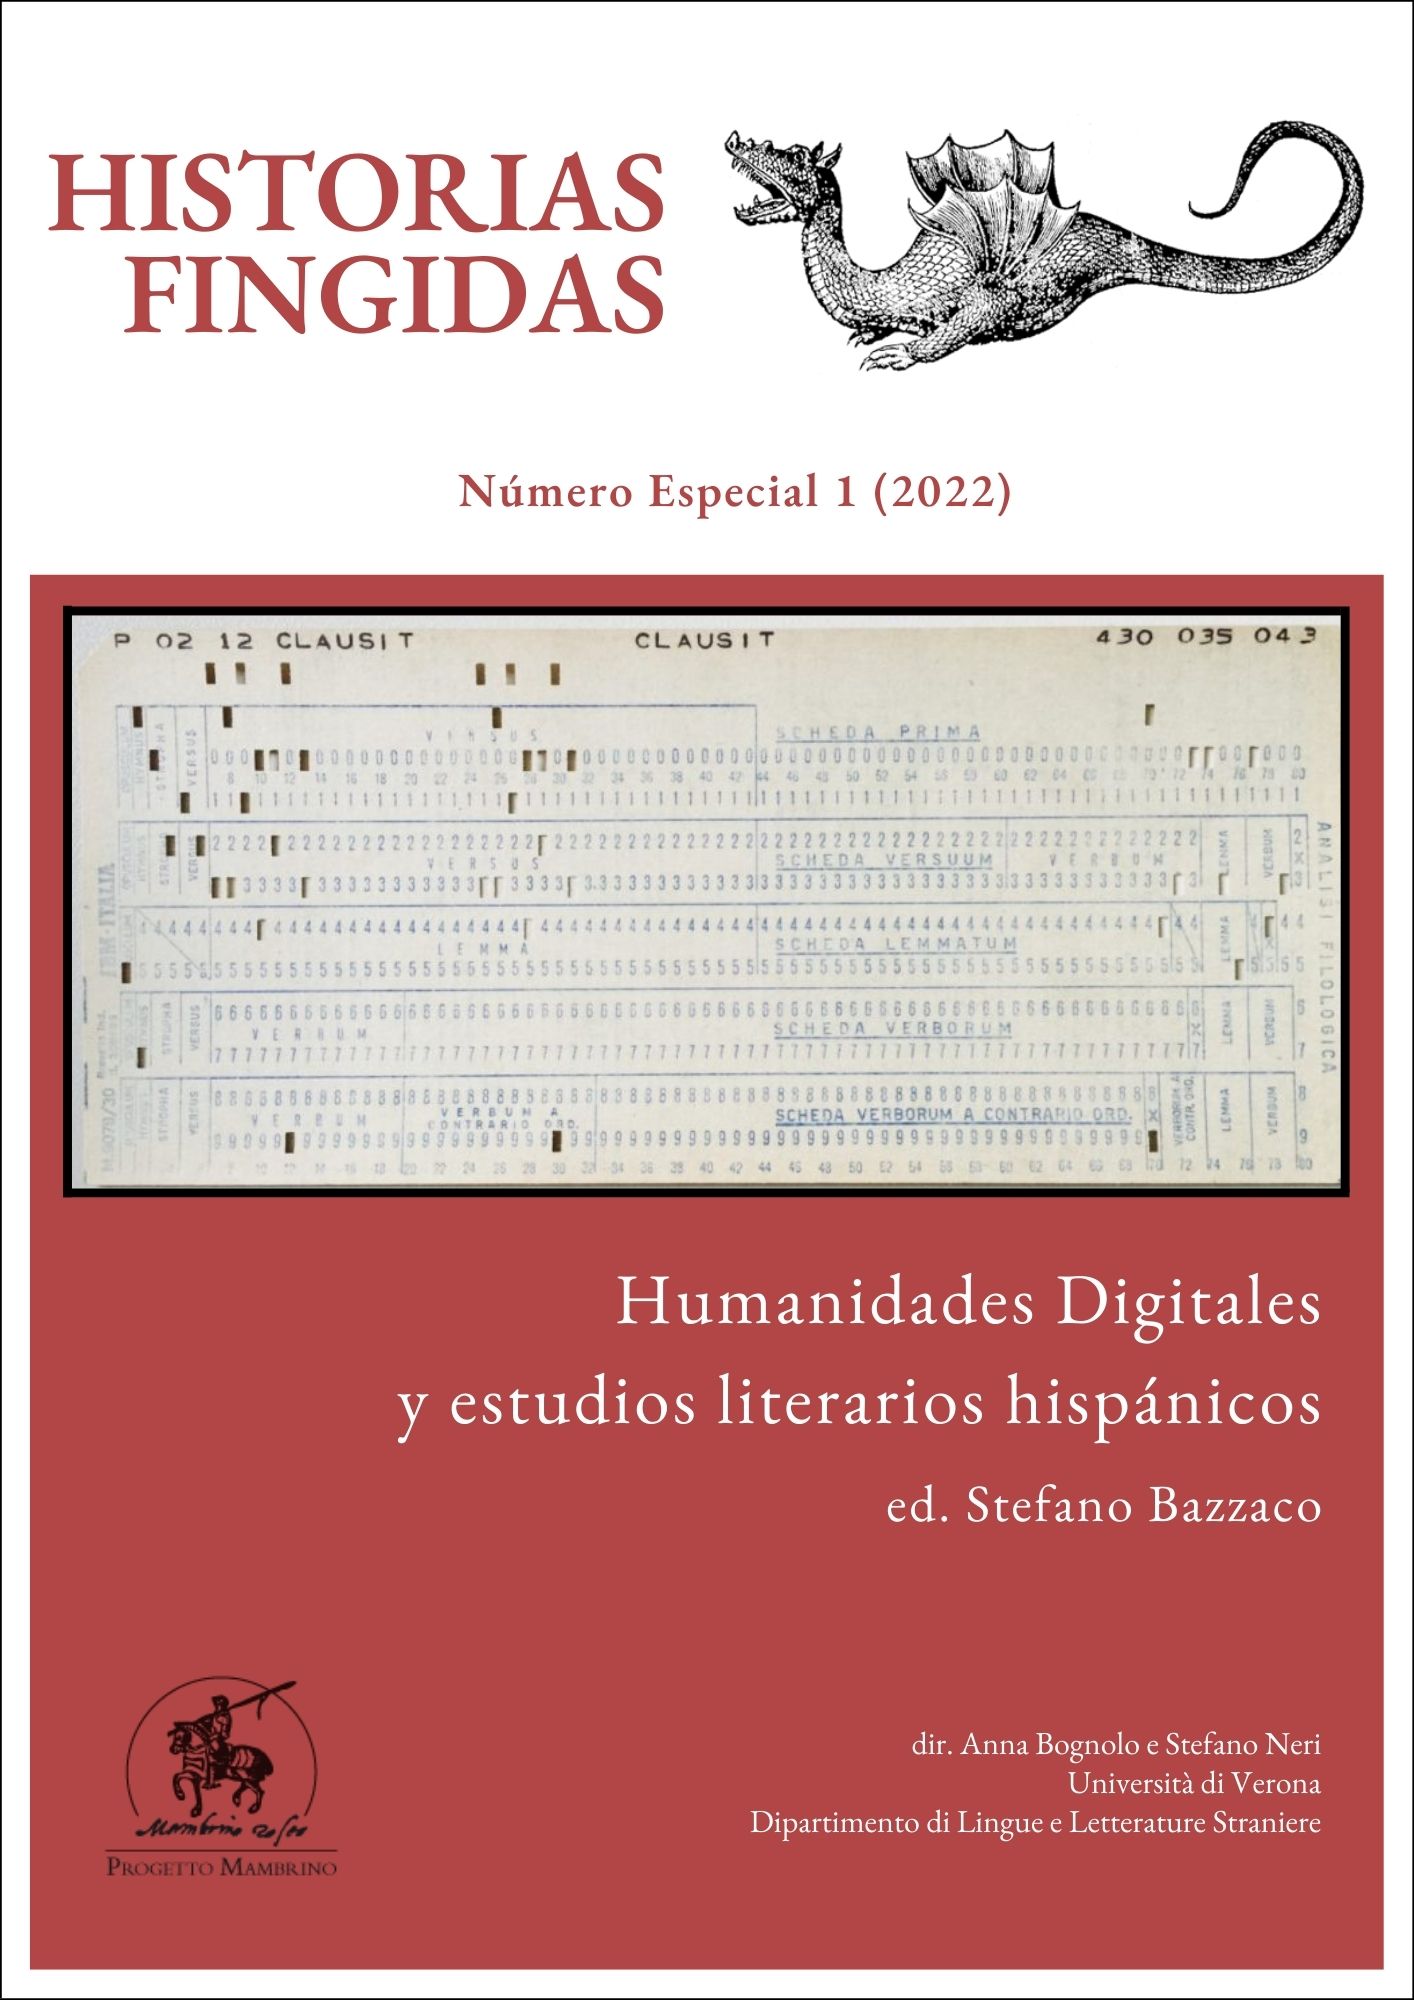 Humanidades Digitales y Estudios Literarios Hispánicos - Historias Fingidas, número especial (2022)